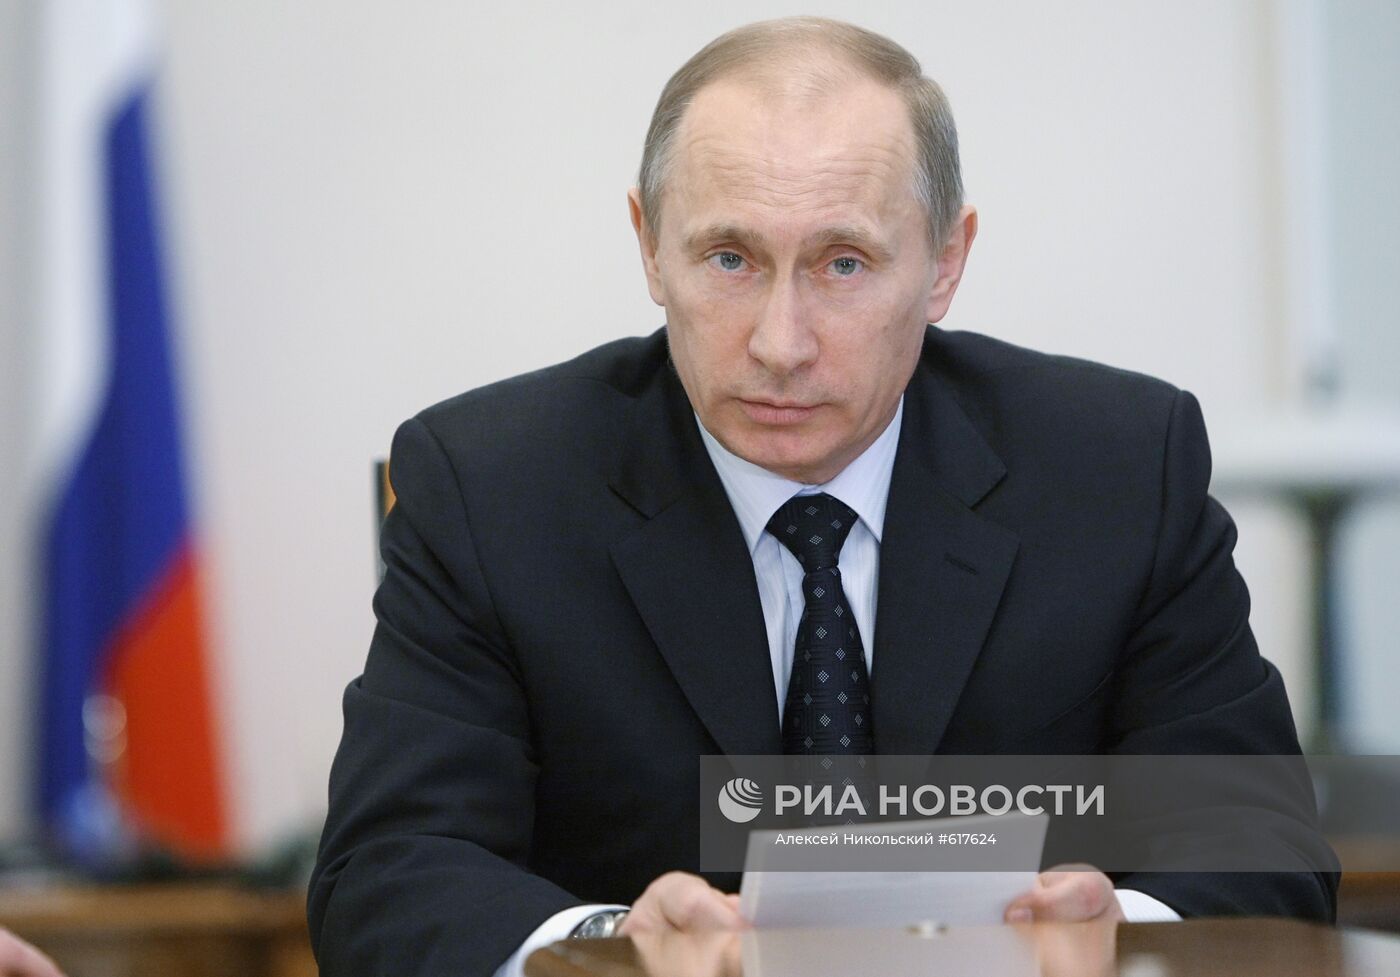 Премьер-министр России В.Путин провел совещание в Ново-Огарево